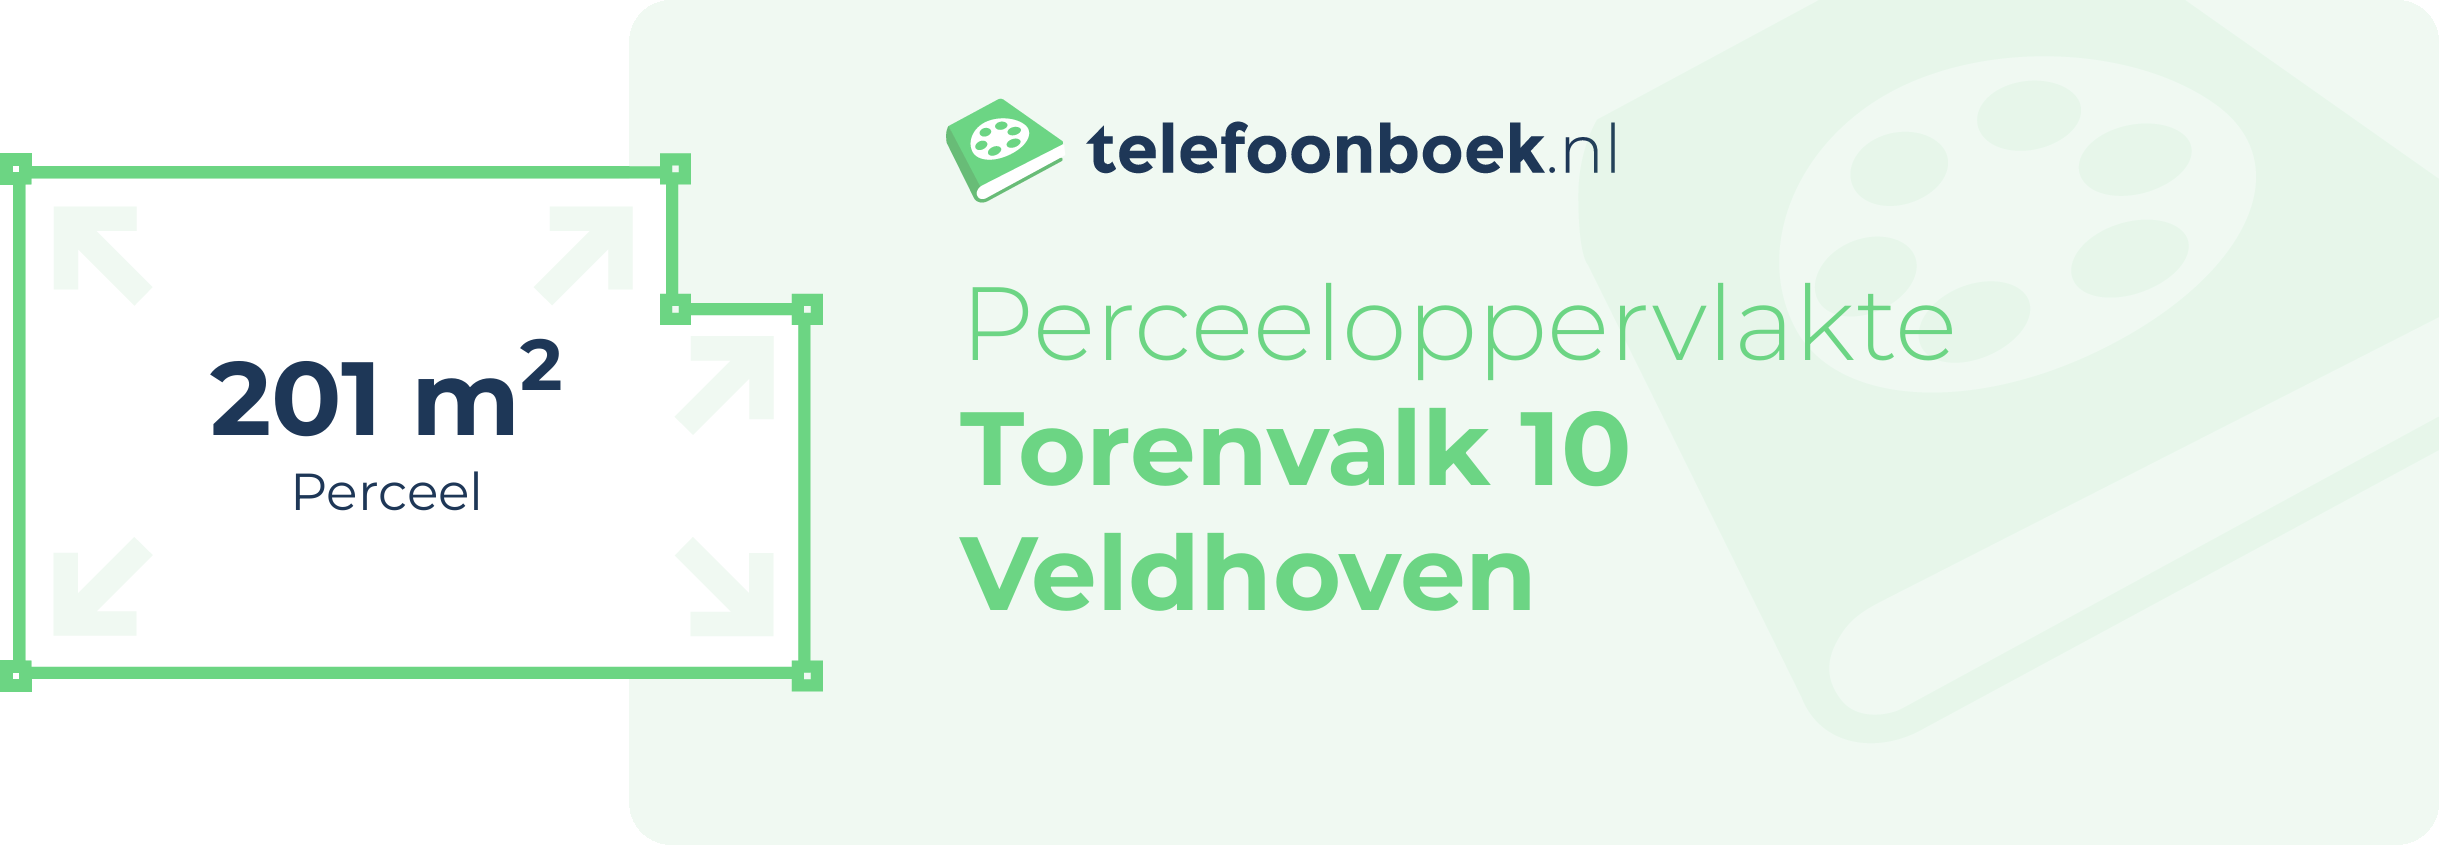 Perceeloppervlakte Torenvalk 10 Veldhoven